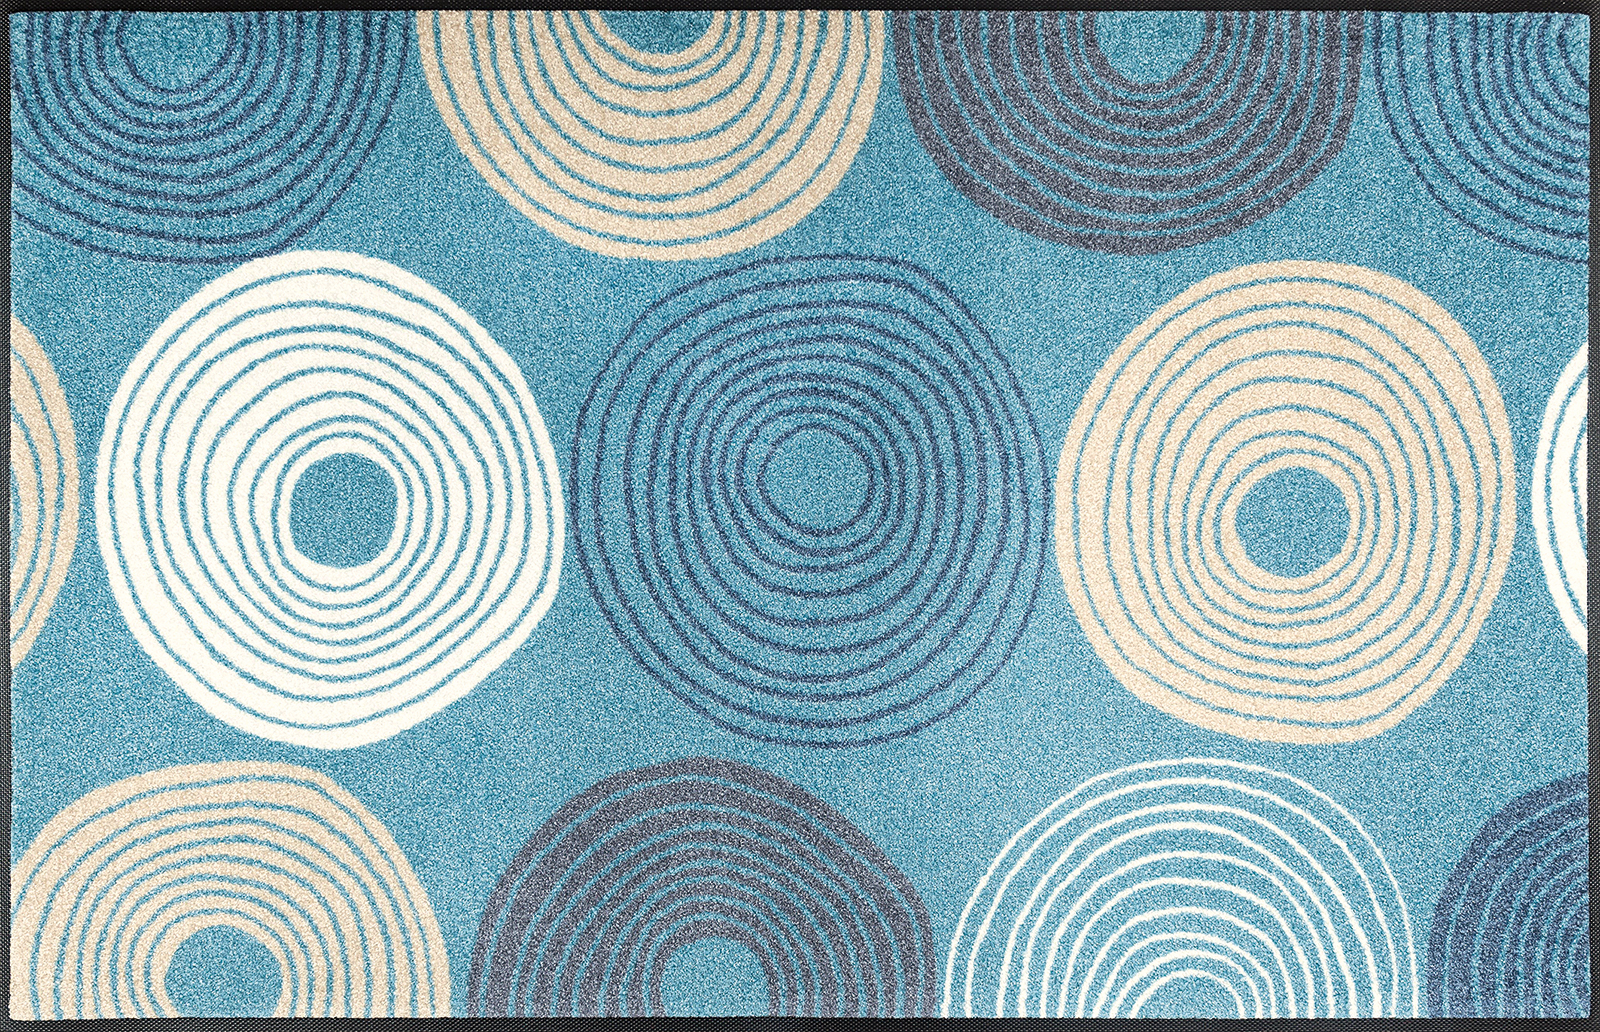 Fußmatte Cyclone, Wash & Dry Designmatte, blaugrundig, 75 x 120 cm, Draufsicht